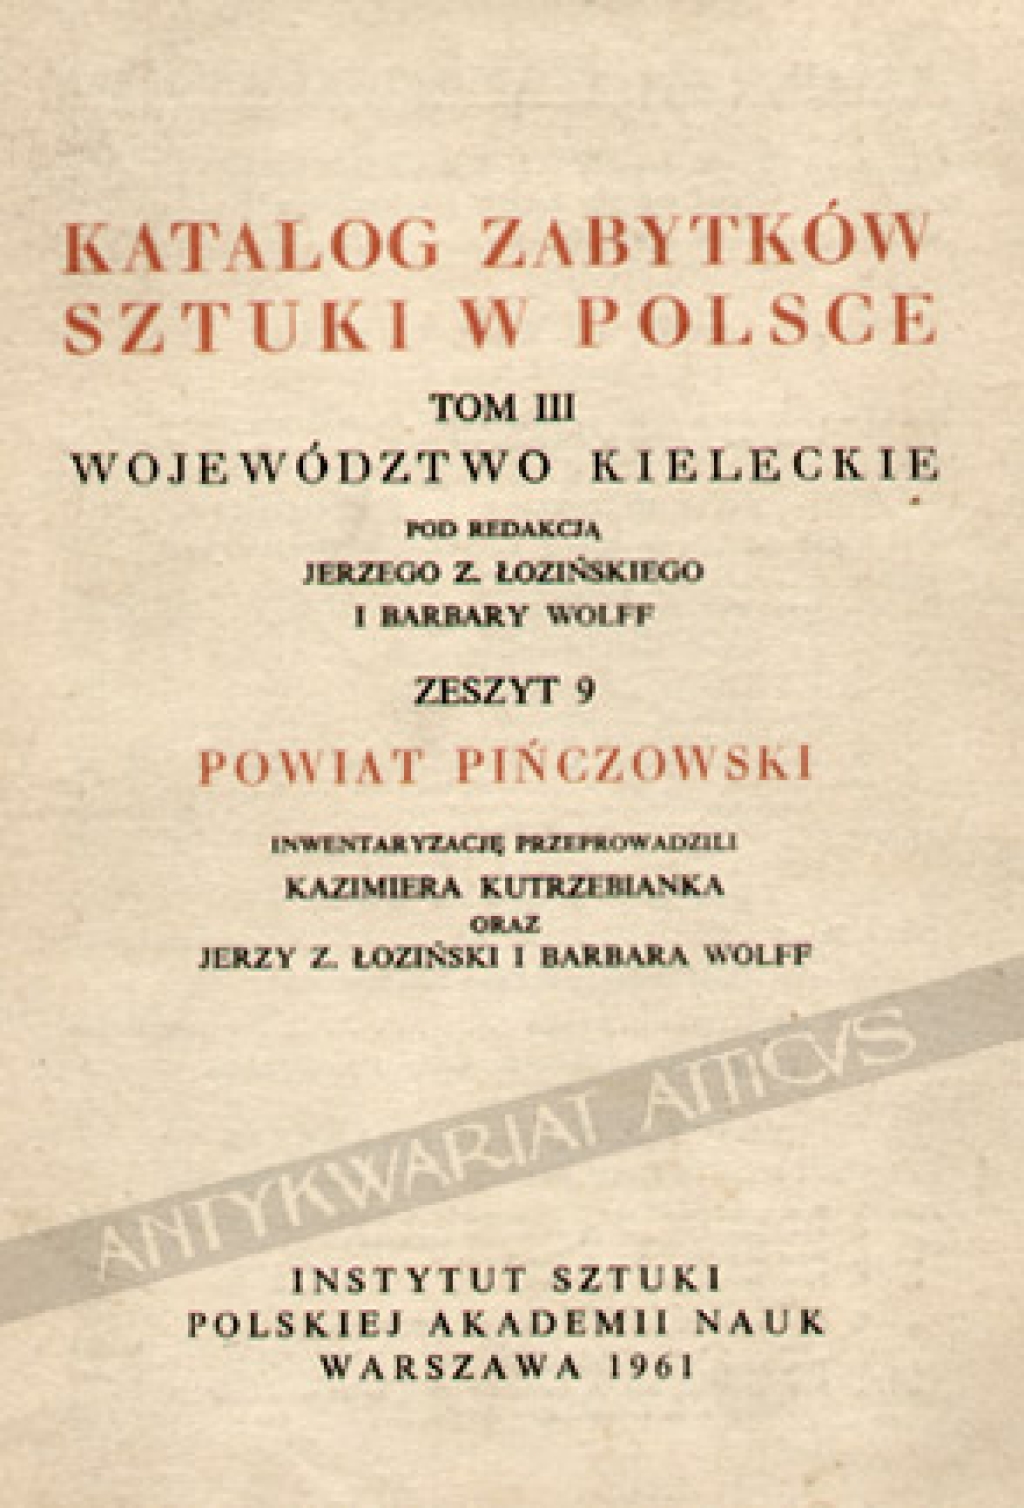 Katalog zabytków sztuki w Polsce, t. III. Województwo Kieleckie. Zeszyt 9, powiat pińczowski